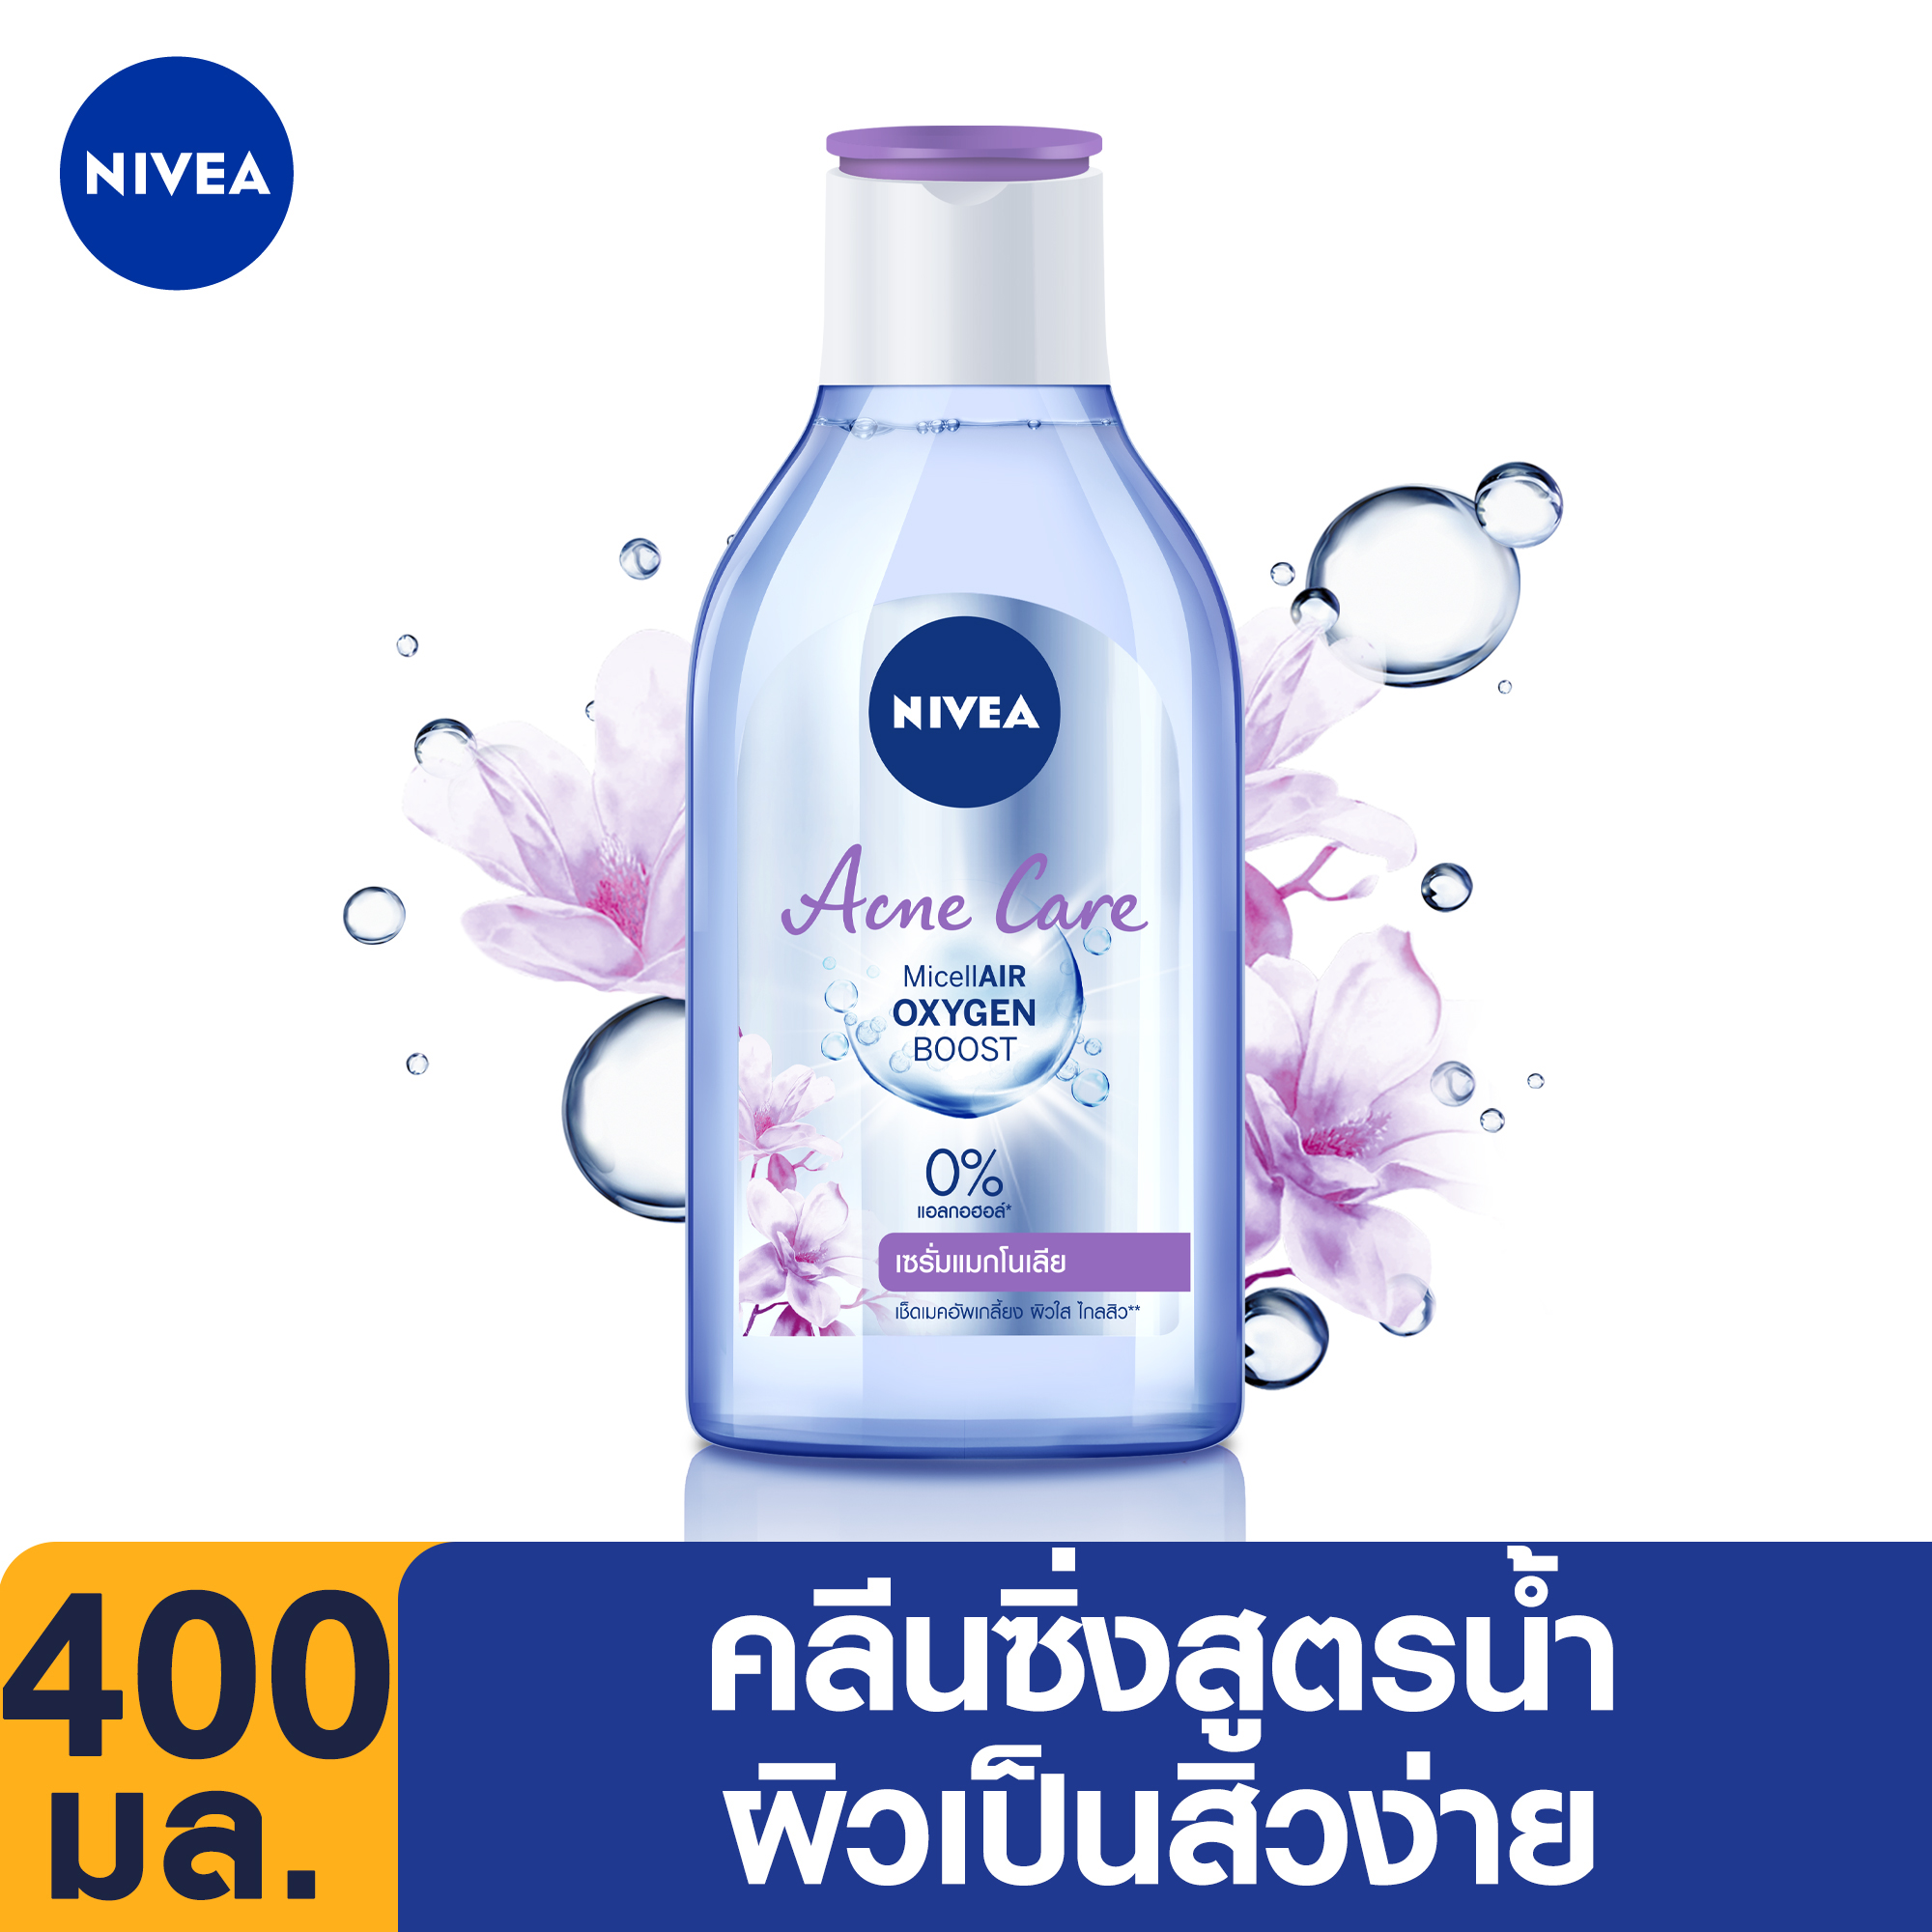 [ส่งฟรี] นีเวีย ไมเซล่า เช็ดเครื่องสำอาง แอคเน่ แคร์ เมคอัพ เคลียร์ 400 มล. NIVEA  NIVEA Acne Care Make Up Clear Micellar Water 400 ml. (Micellar Cleansing Water สําหรับคนเป็นสิว